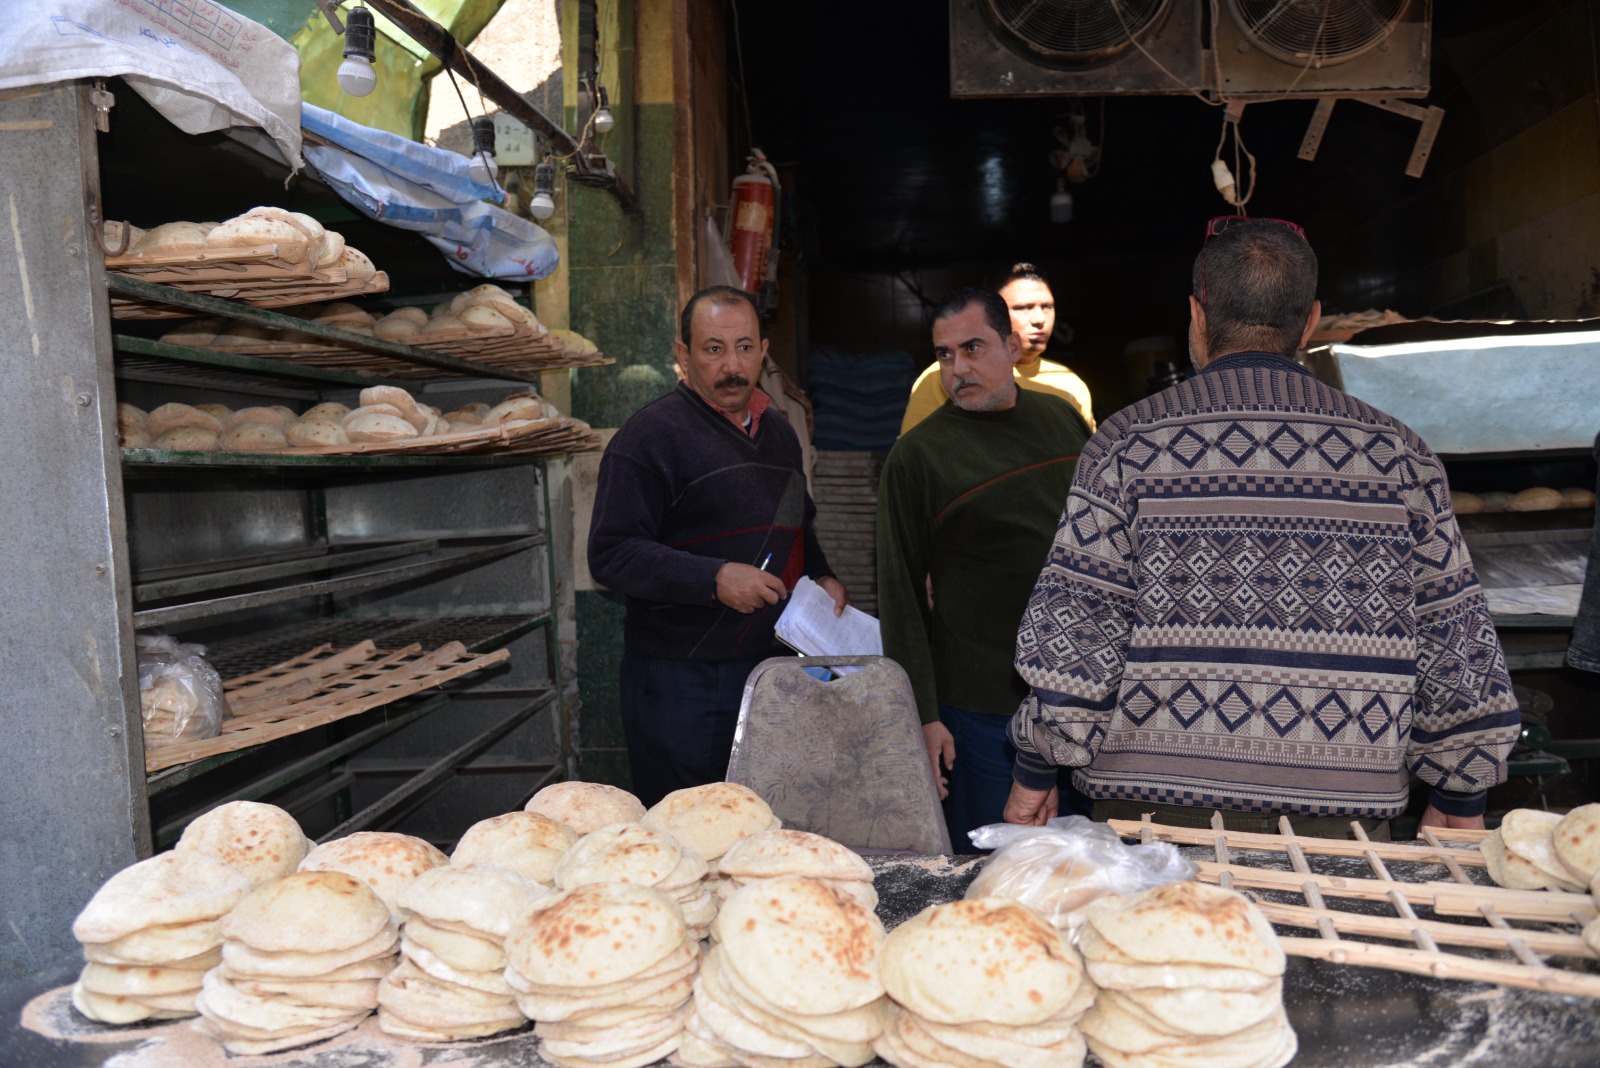 حملة تموينية لضبط ومراقبة الأسواق والأسعار بمدينة الإسماعيلية (2)